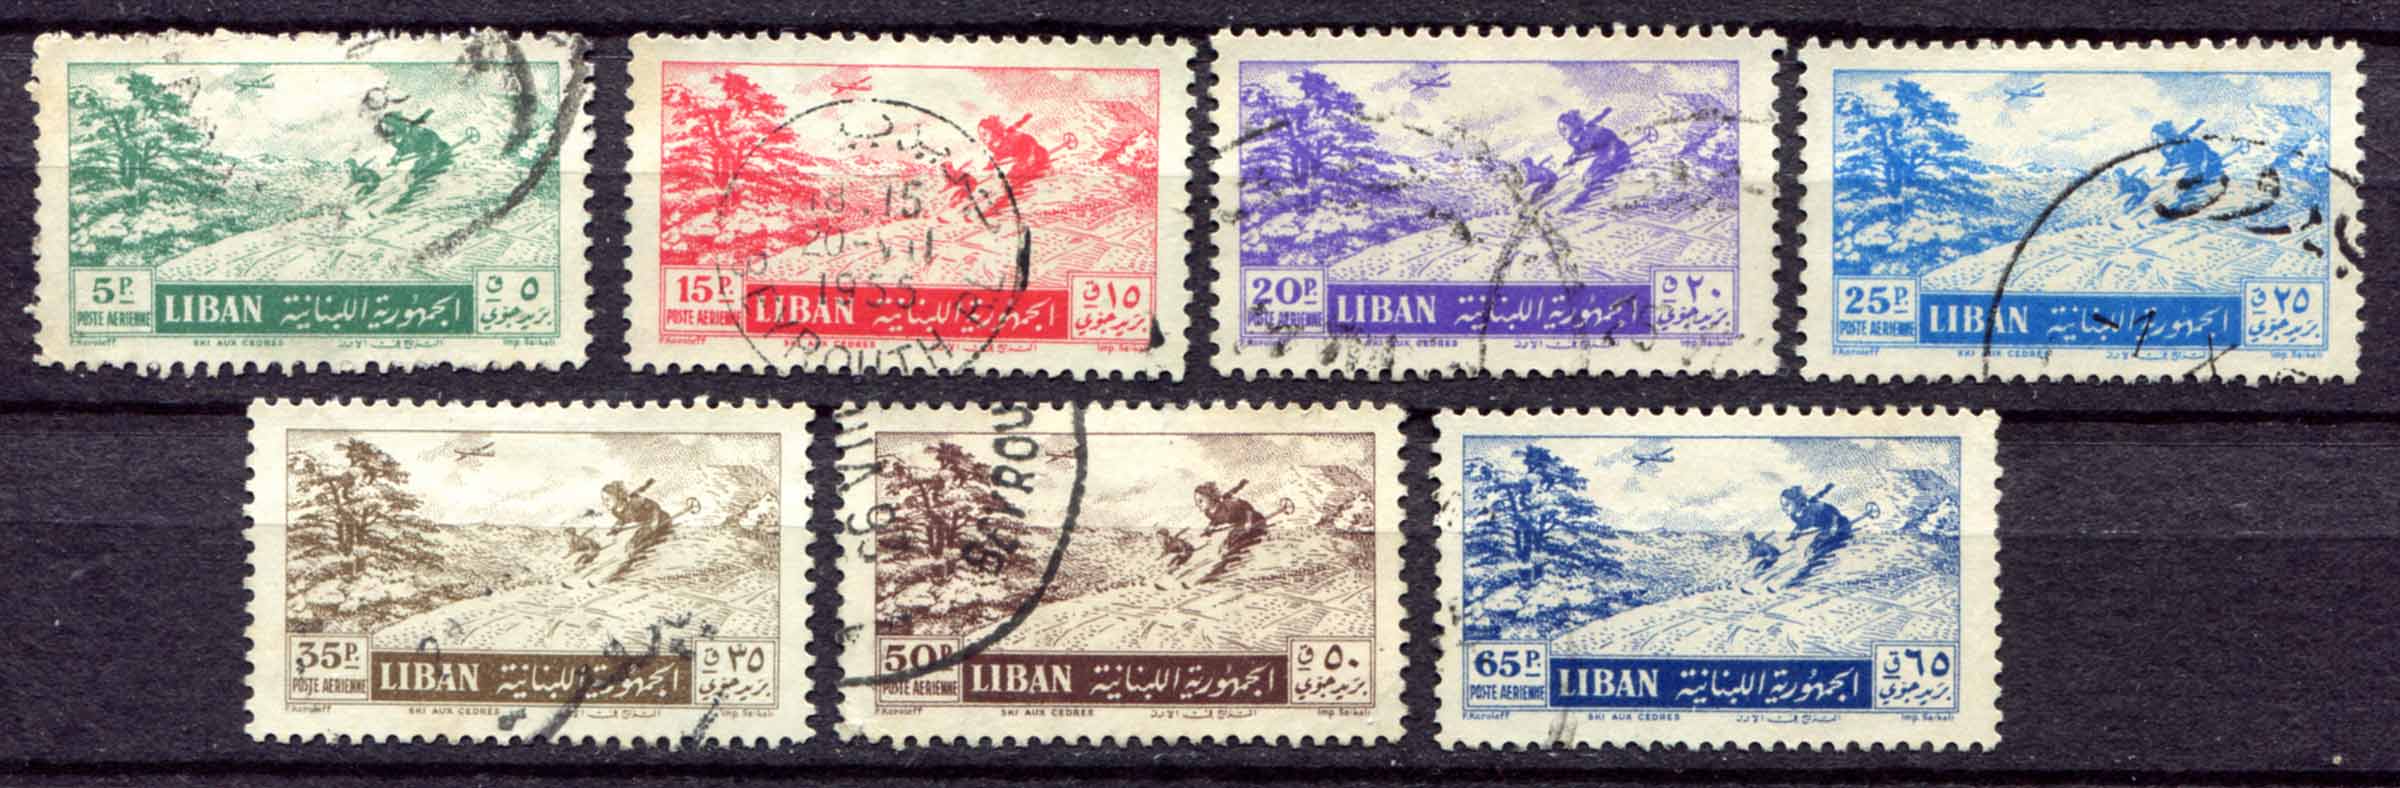 Country mark. Evromed выпуск почтовых марок стран Средиземноморья. Почтовые марки государства Эритрея растения.